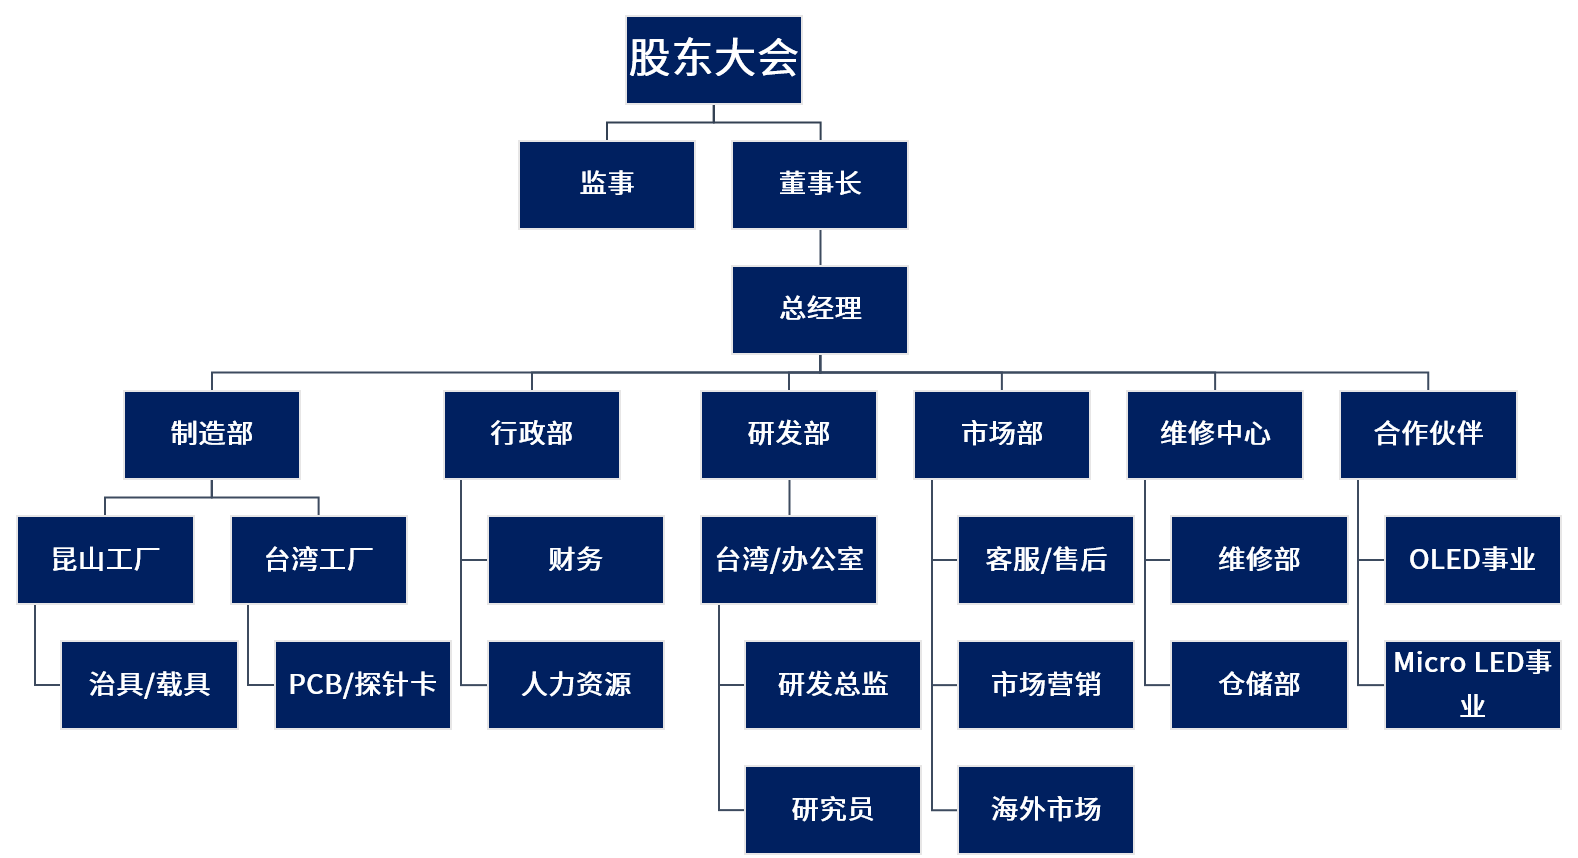 武汉迈斯卡德微电子科技有限公司组织架构表